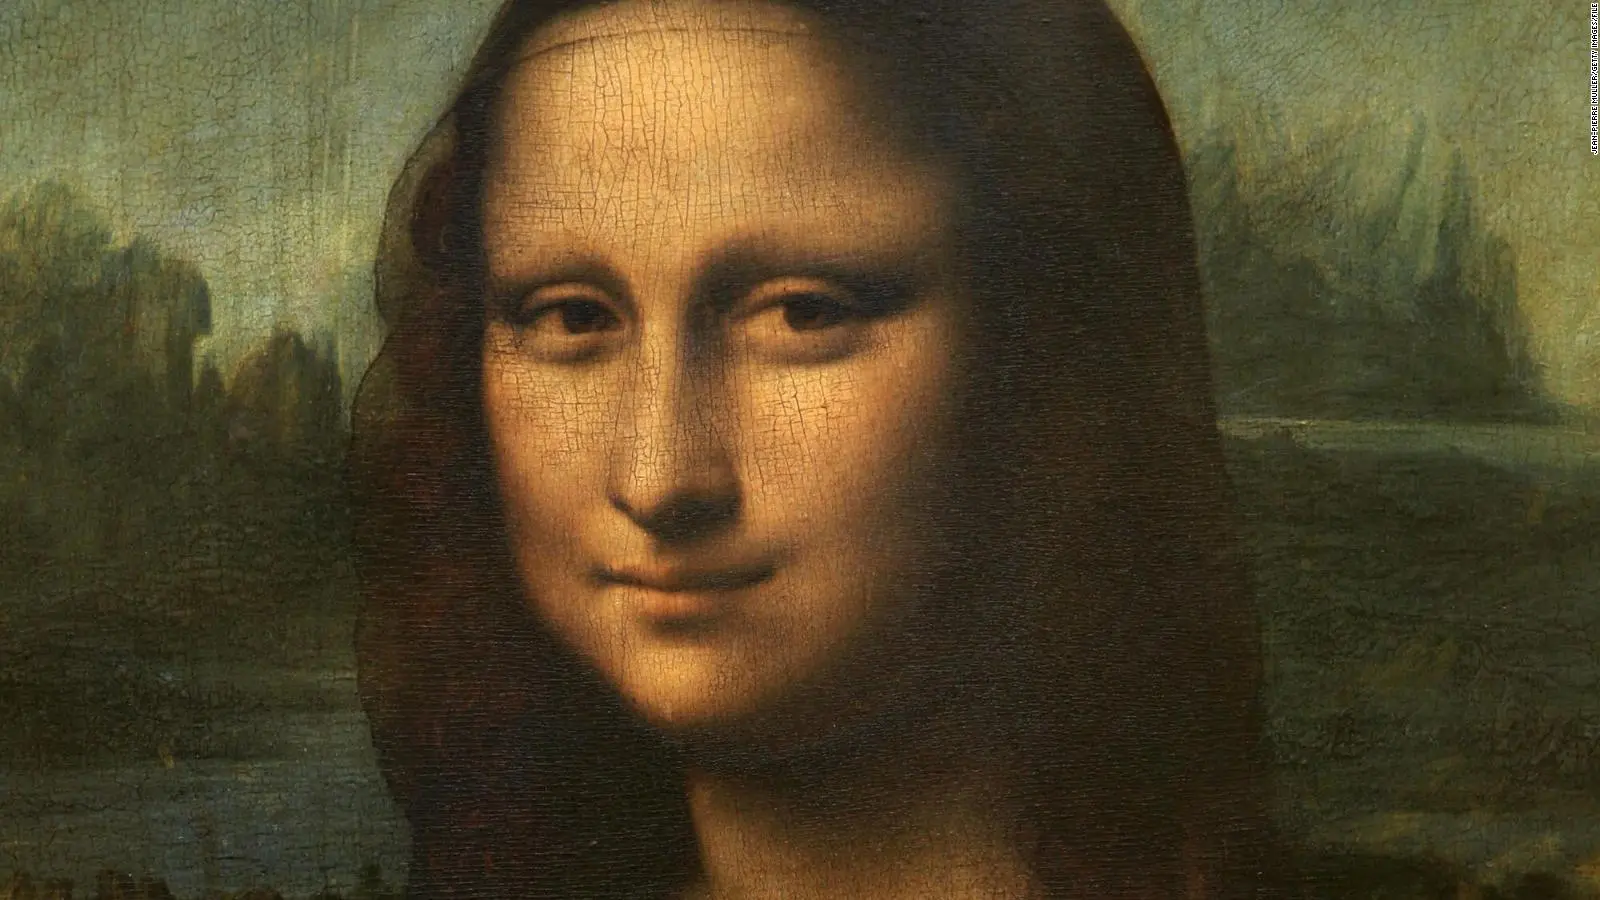 Nuovi indizi sulla Gioconda di da Vinci